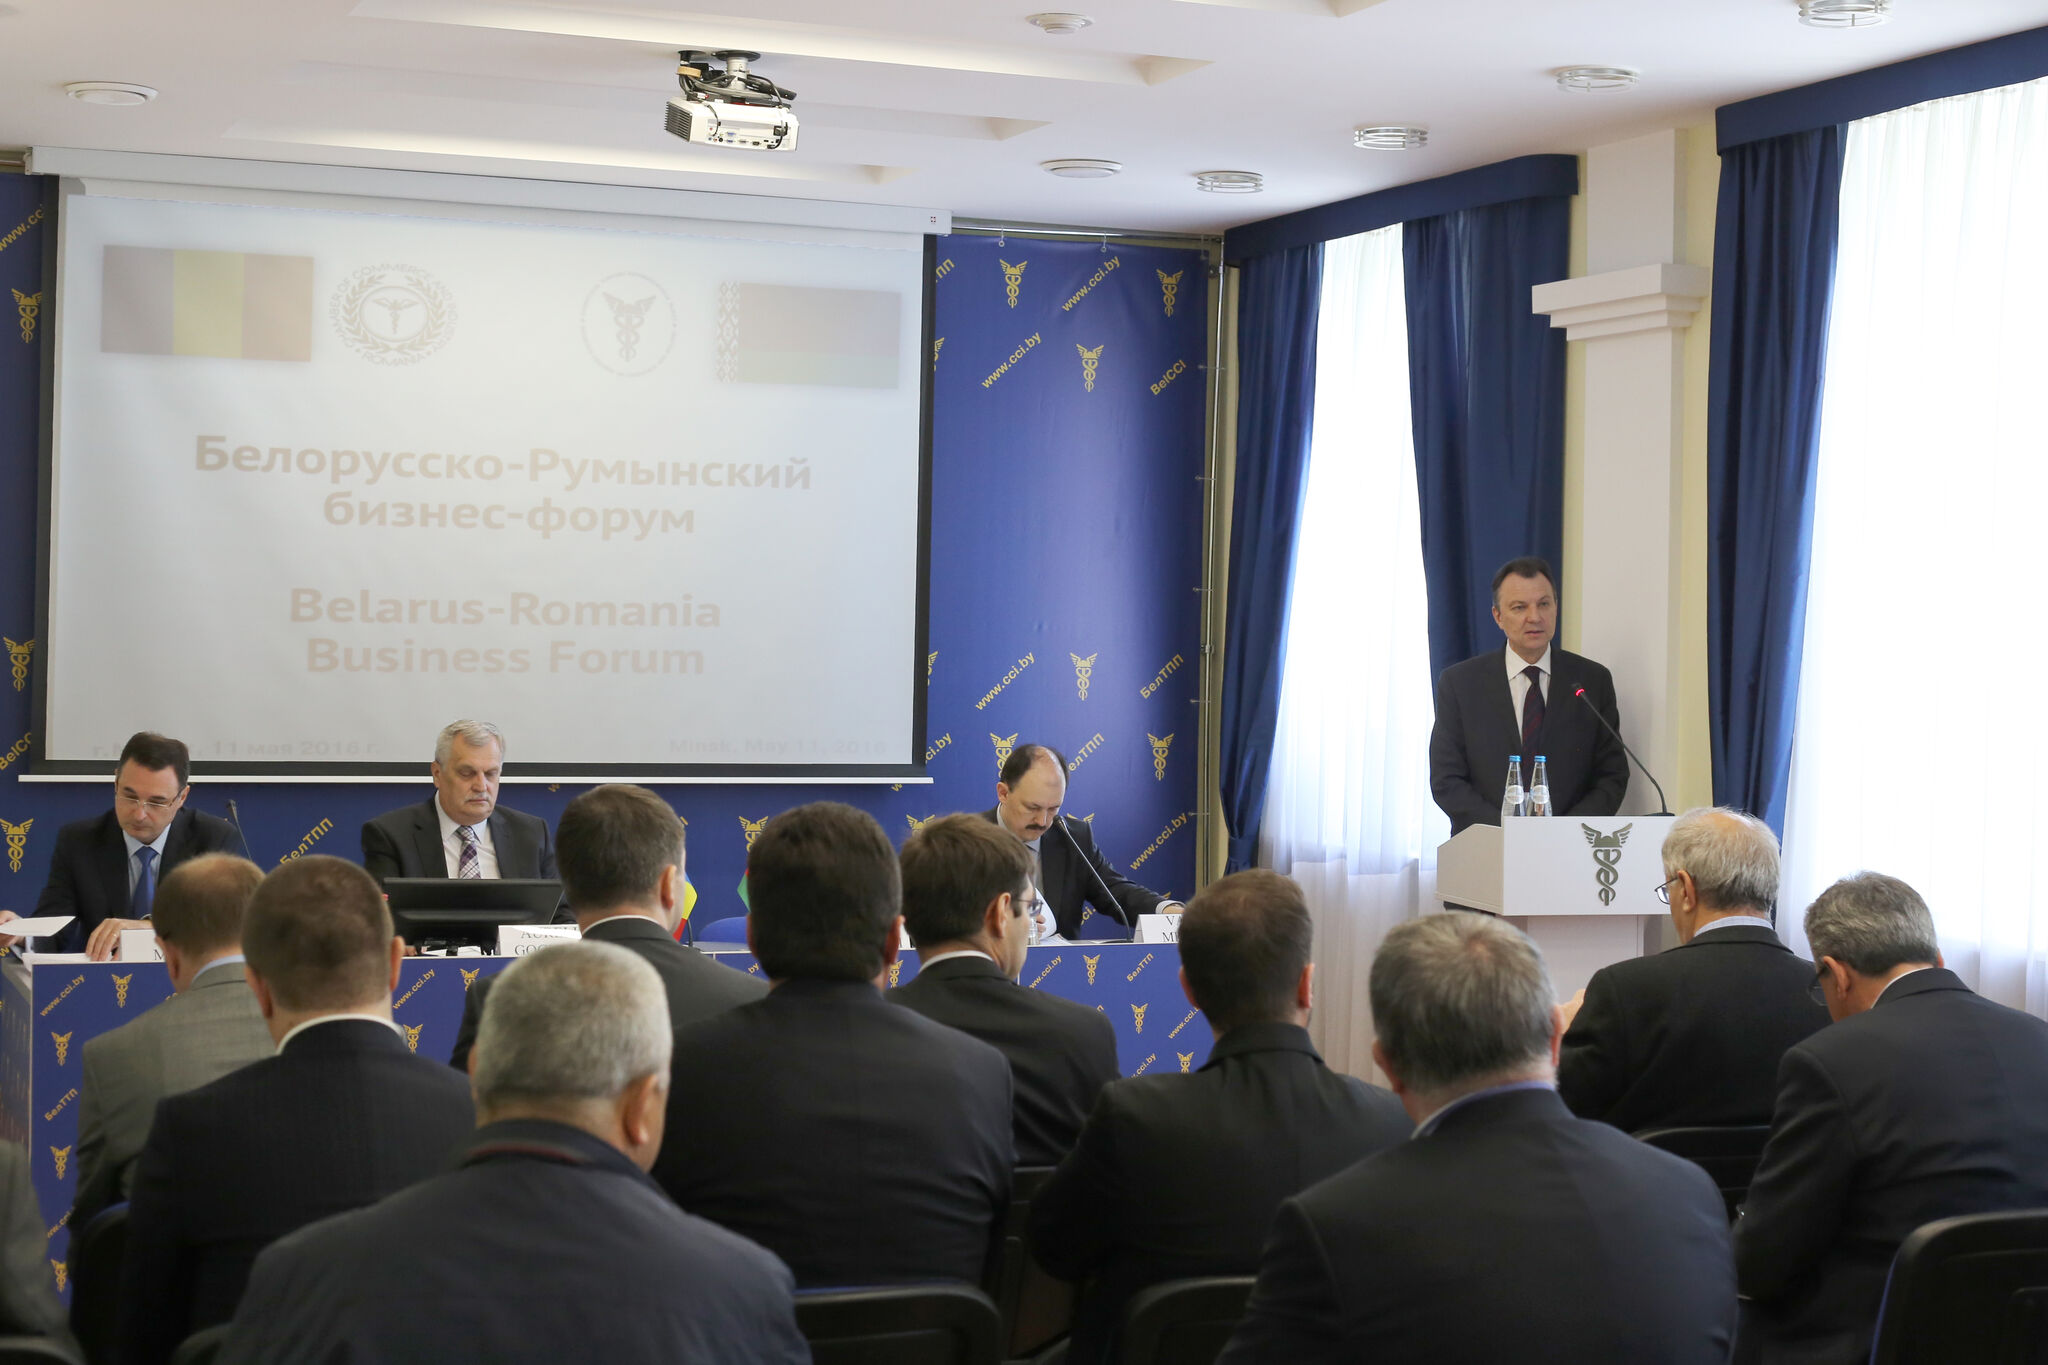 Белорусско-Румынский бизнес-форум